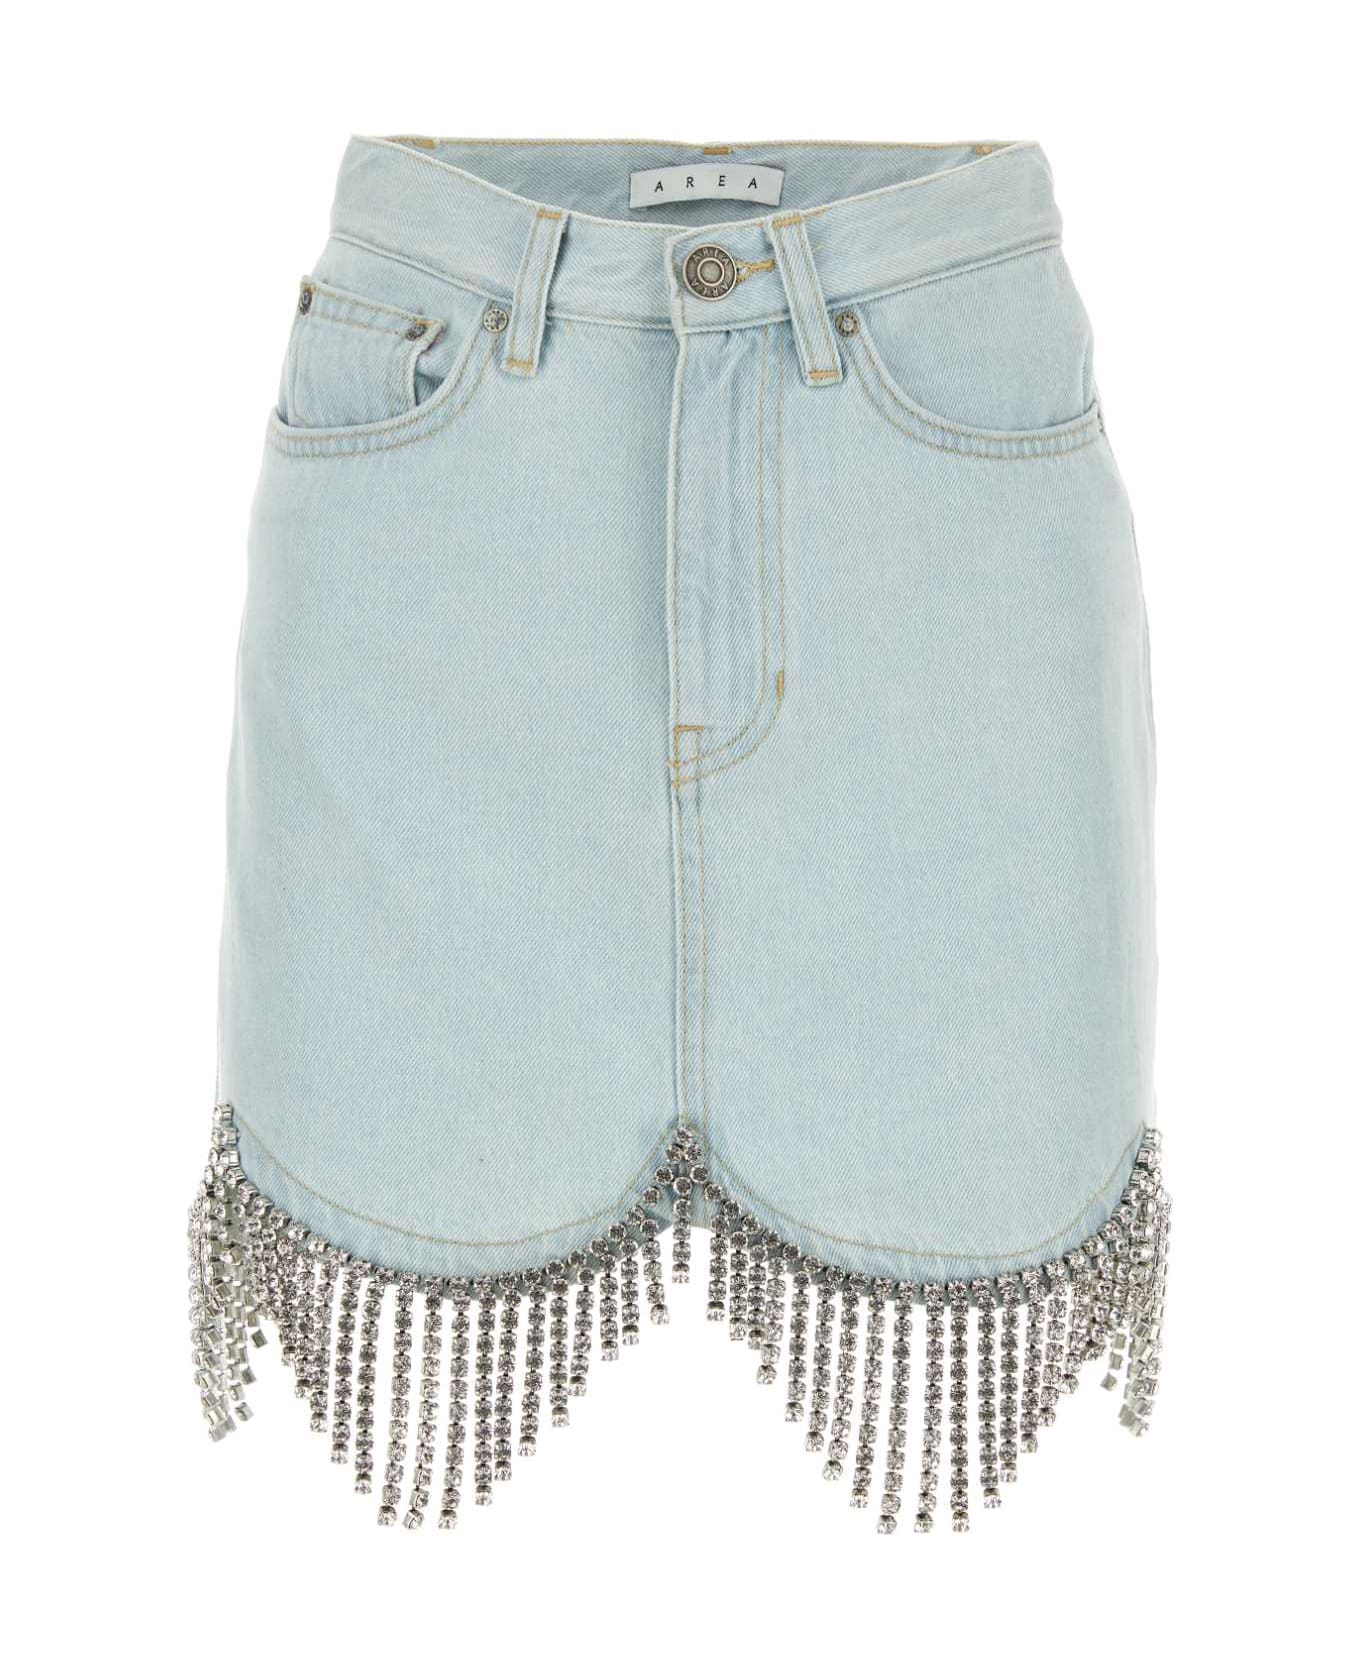 AREA Light-blue Denim Mini Skirt - PALEBLUE ショートパンツ